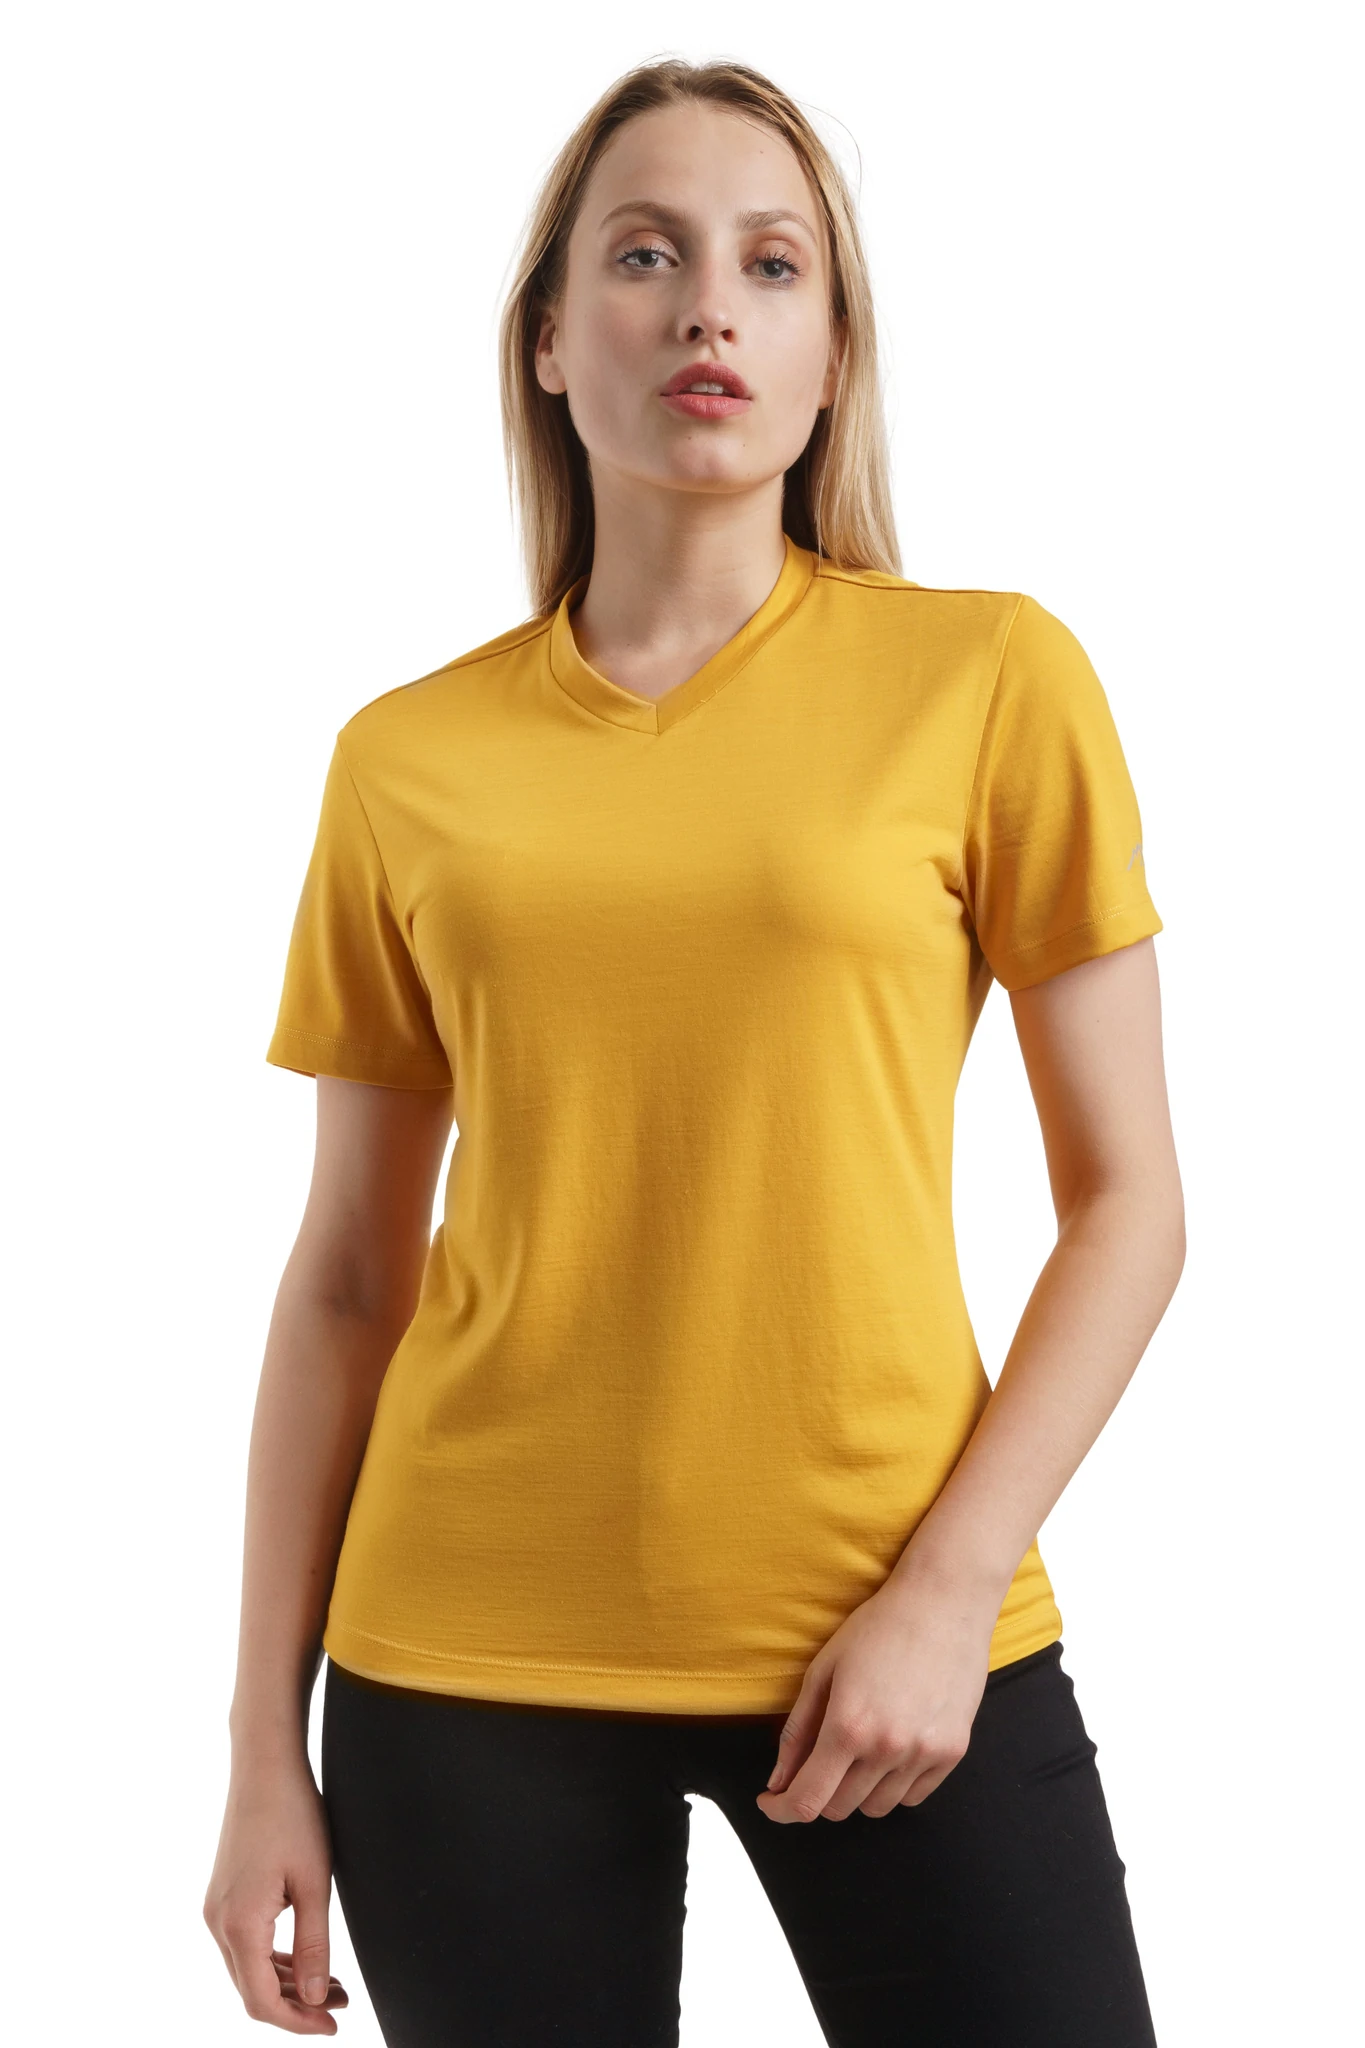 Gold Merino.tech Merino Wool T Shirt Women - 100% Merino Wool Base Layer Women Short Sleeve Tee